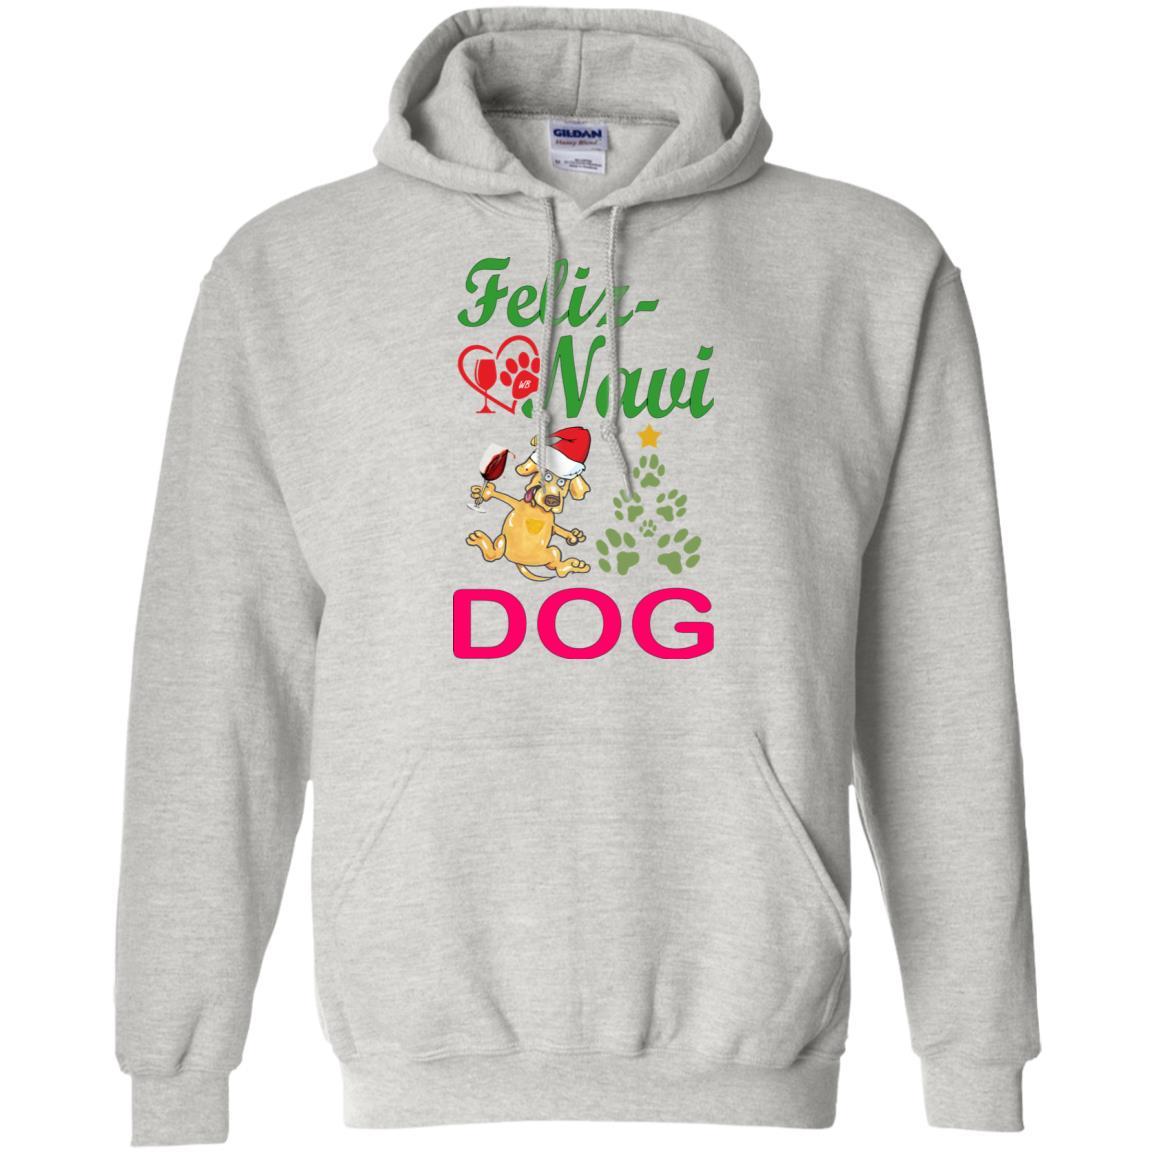 Sweatshirts Ash / S WineyBitches.Co "Feliz Navi Dog" Pullover Unisex Hoodie 8 oz. WineyBitchesCo